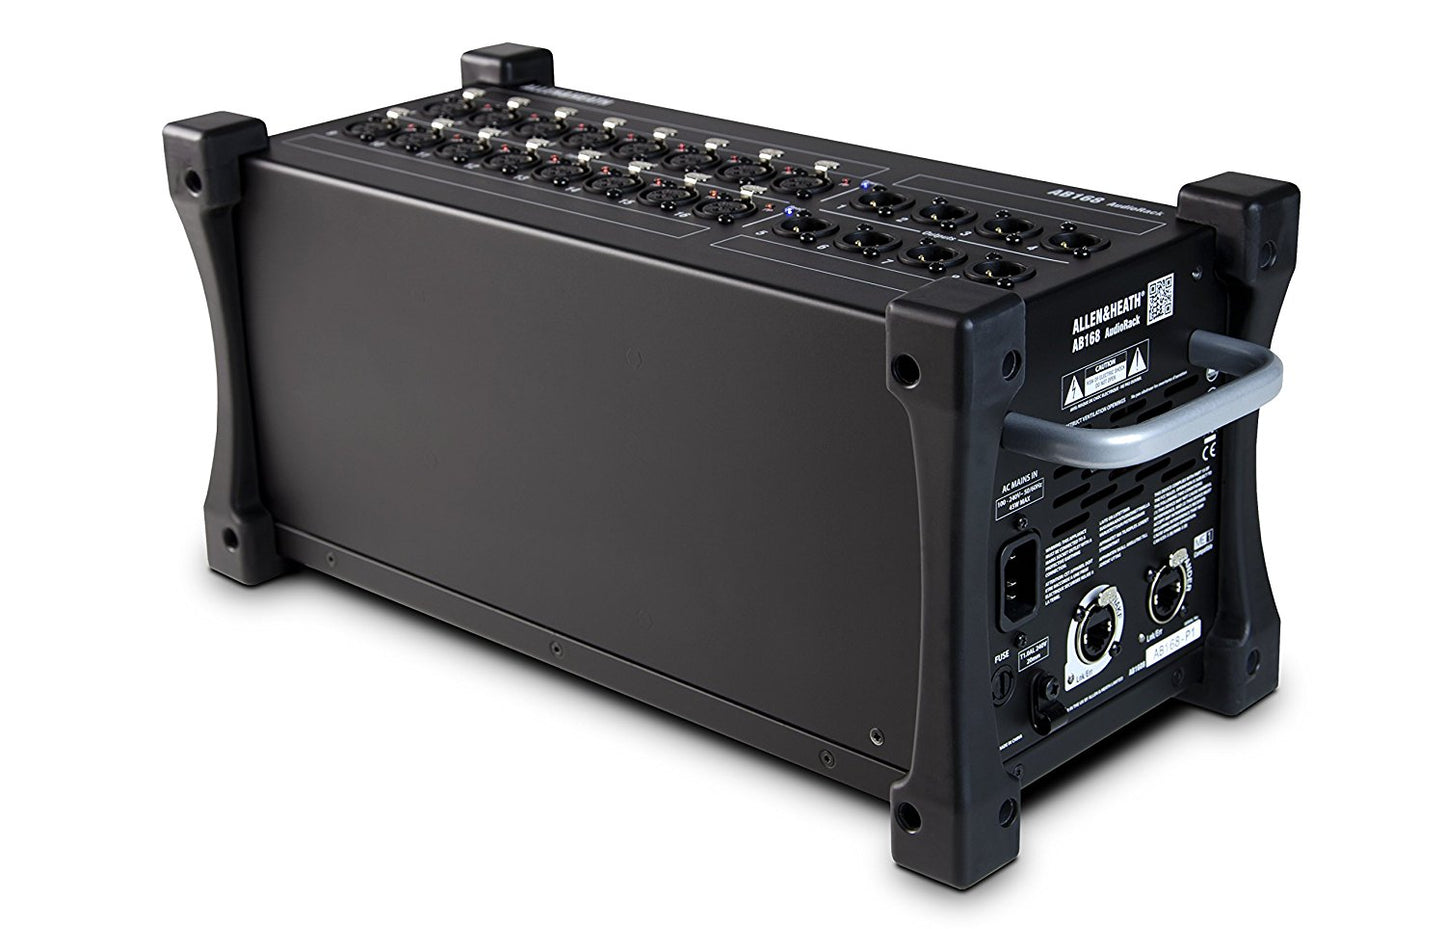 Allen & Heath AB-168 16-Channel Portable AudioRack Stage Box